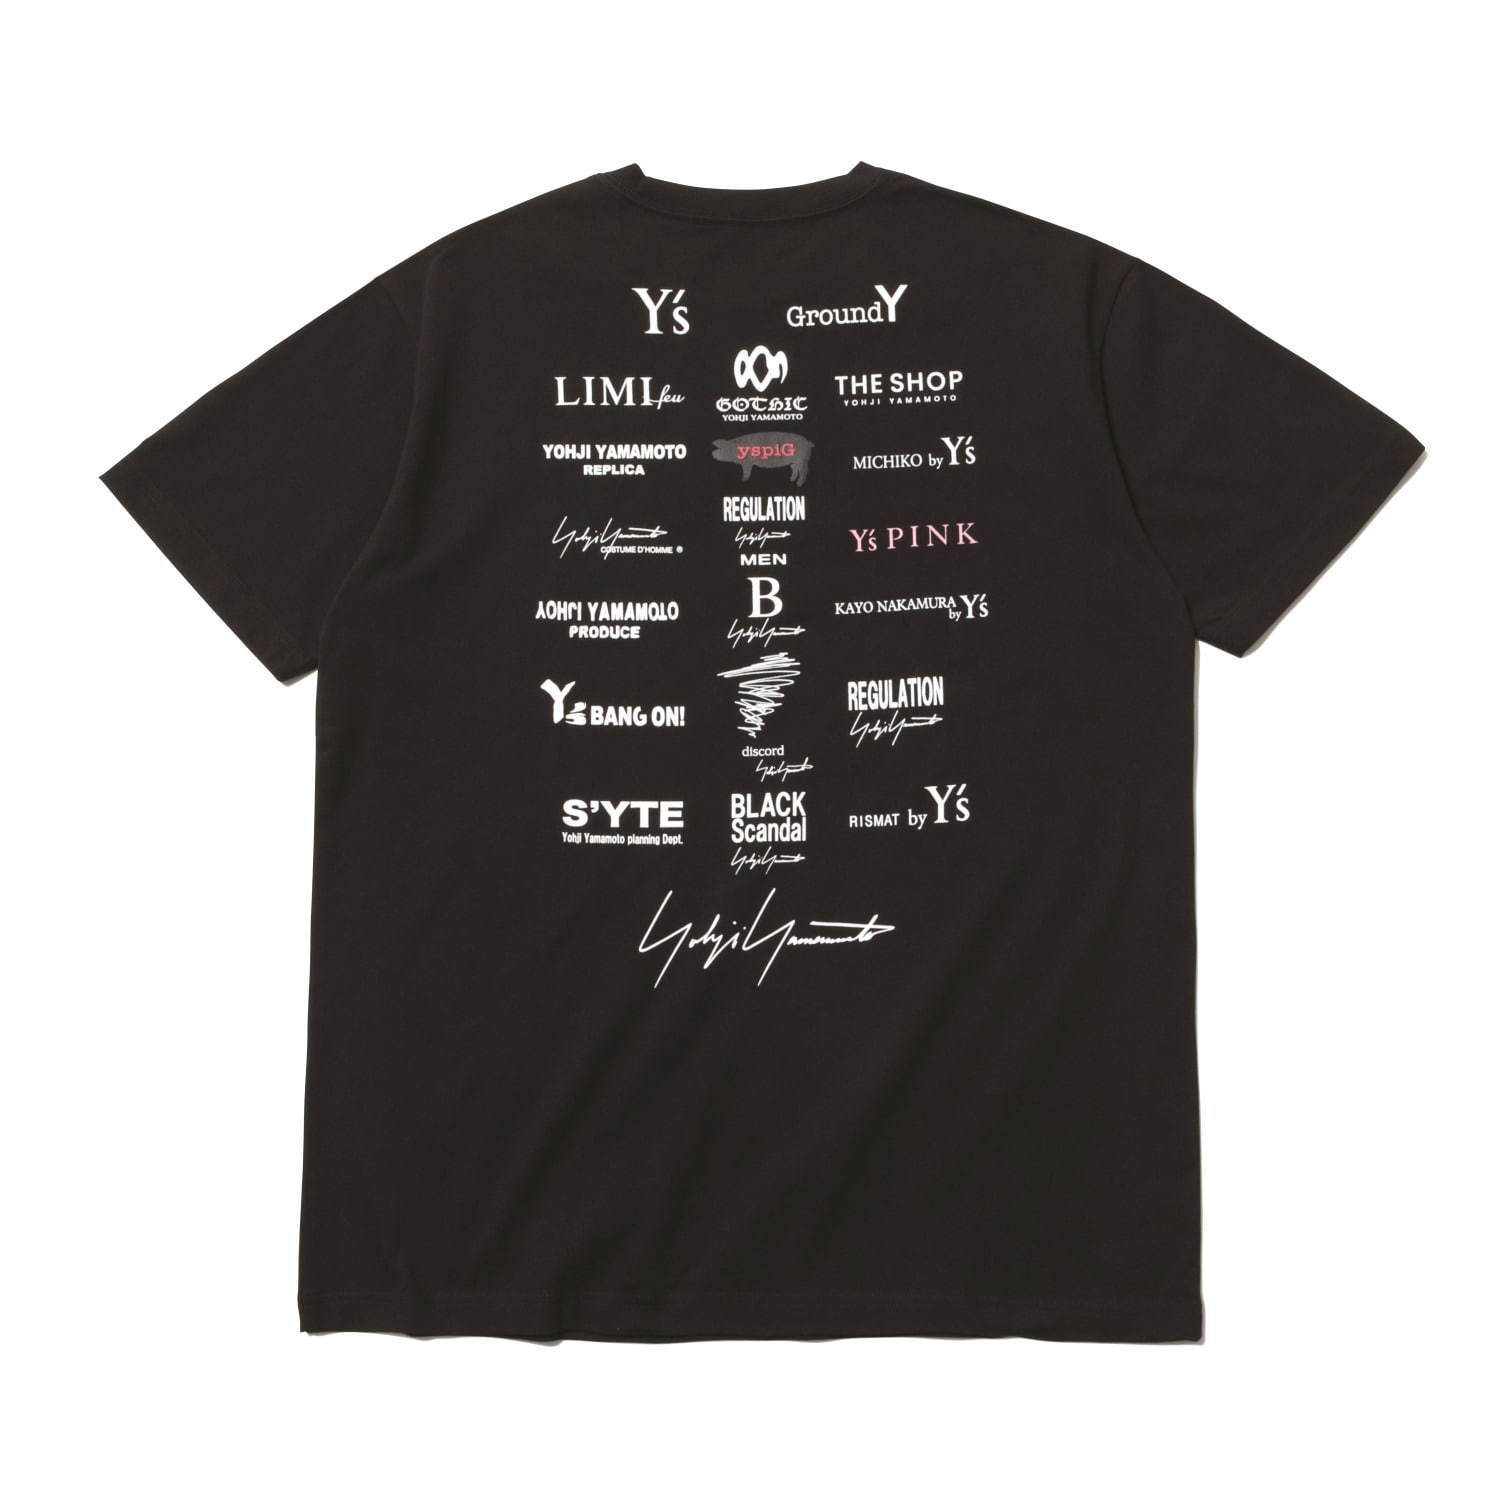 〈ヨウジヤマモト×ニューエラ〉ヨウジヤマモト社ブランド・ラインのロゴを配したキャップやTシャツ